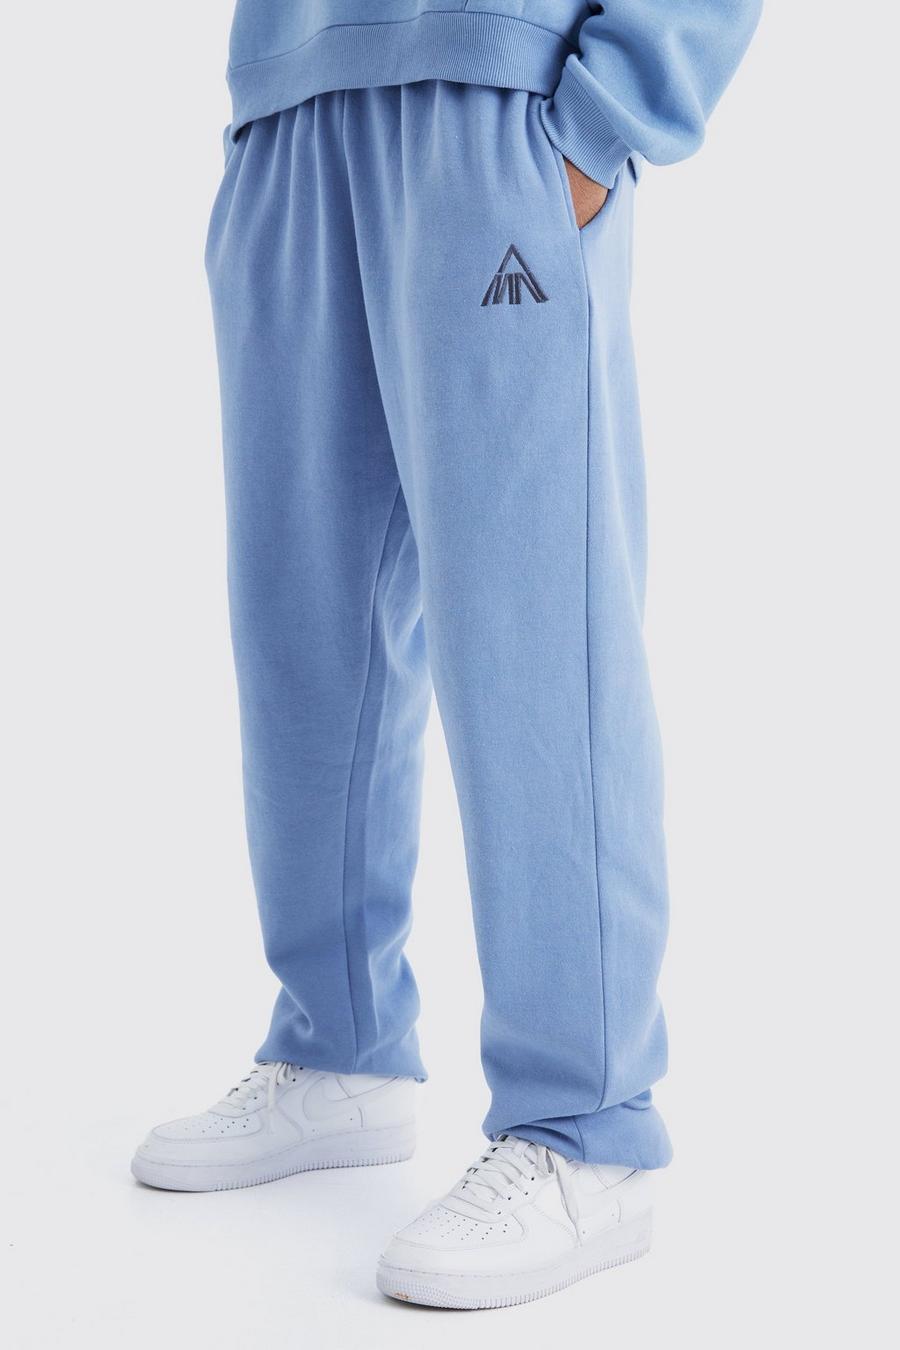 Pantaloni tuta Tall Man oversize Basic, Dusty blue image number 1